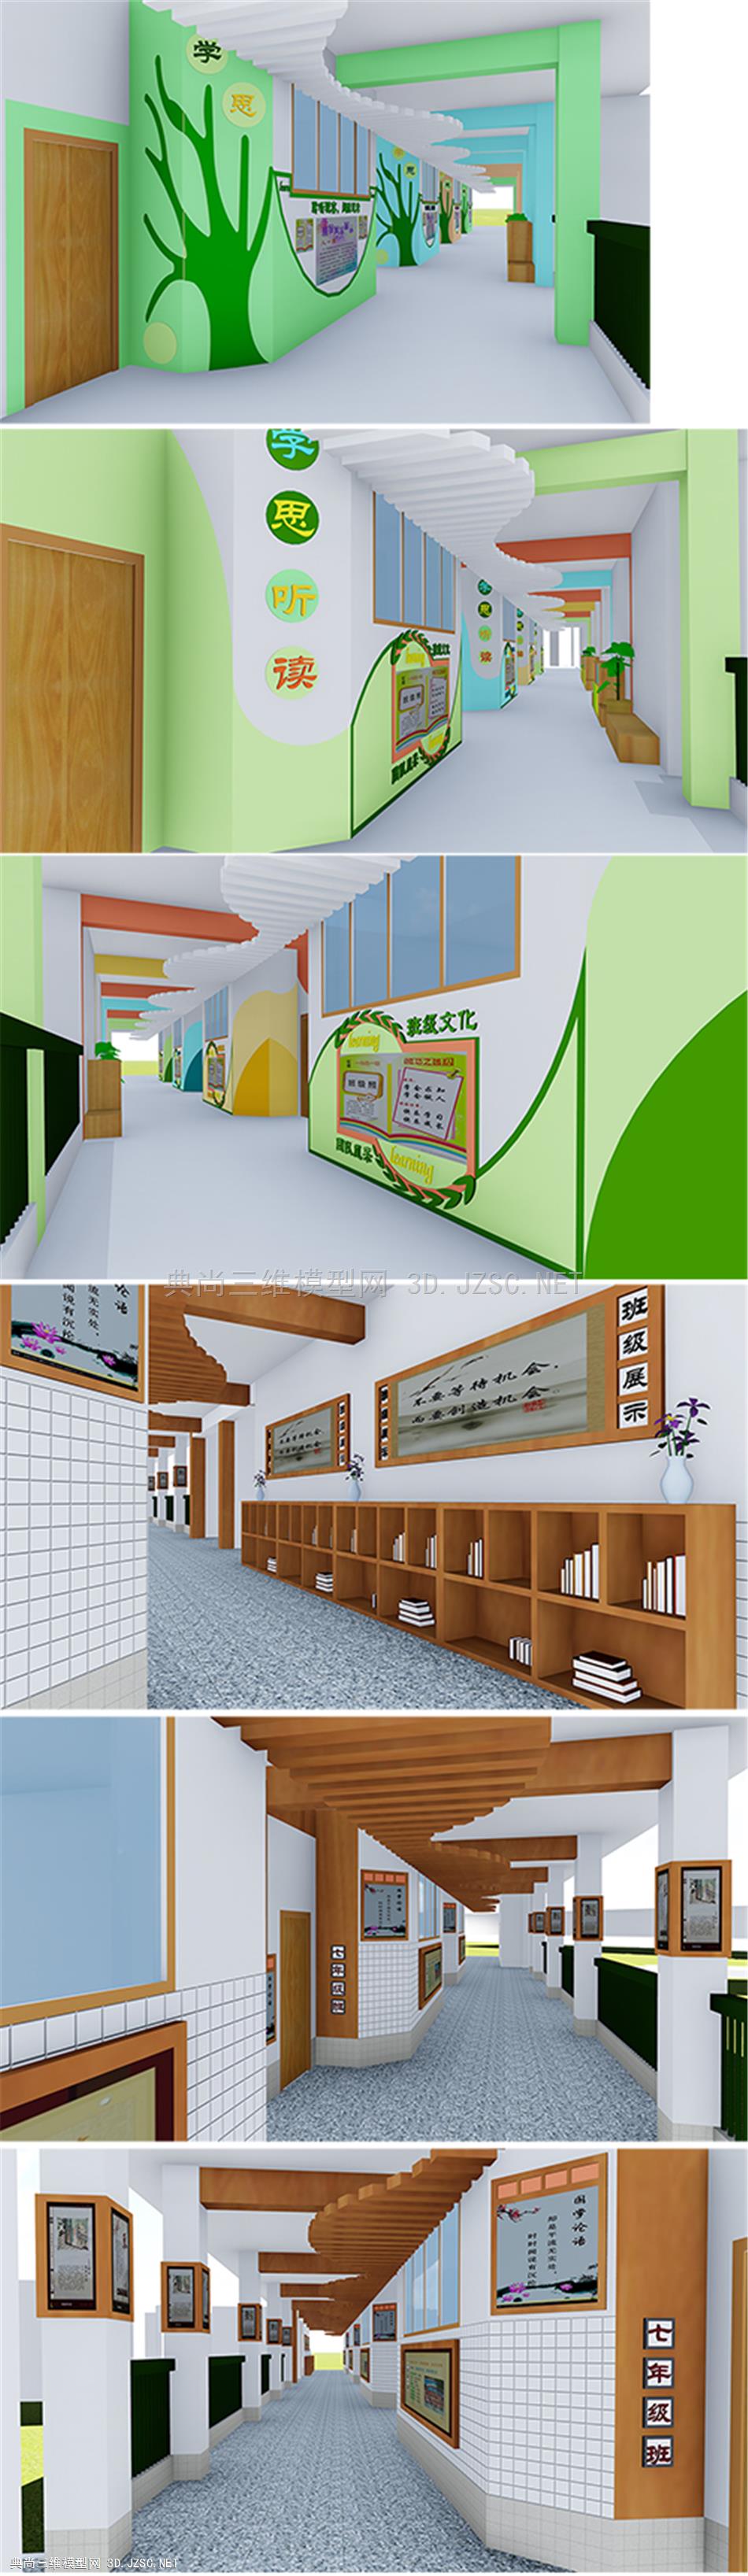 某碧桂园学校走廊、教室外墙设计模型